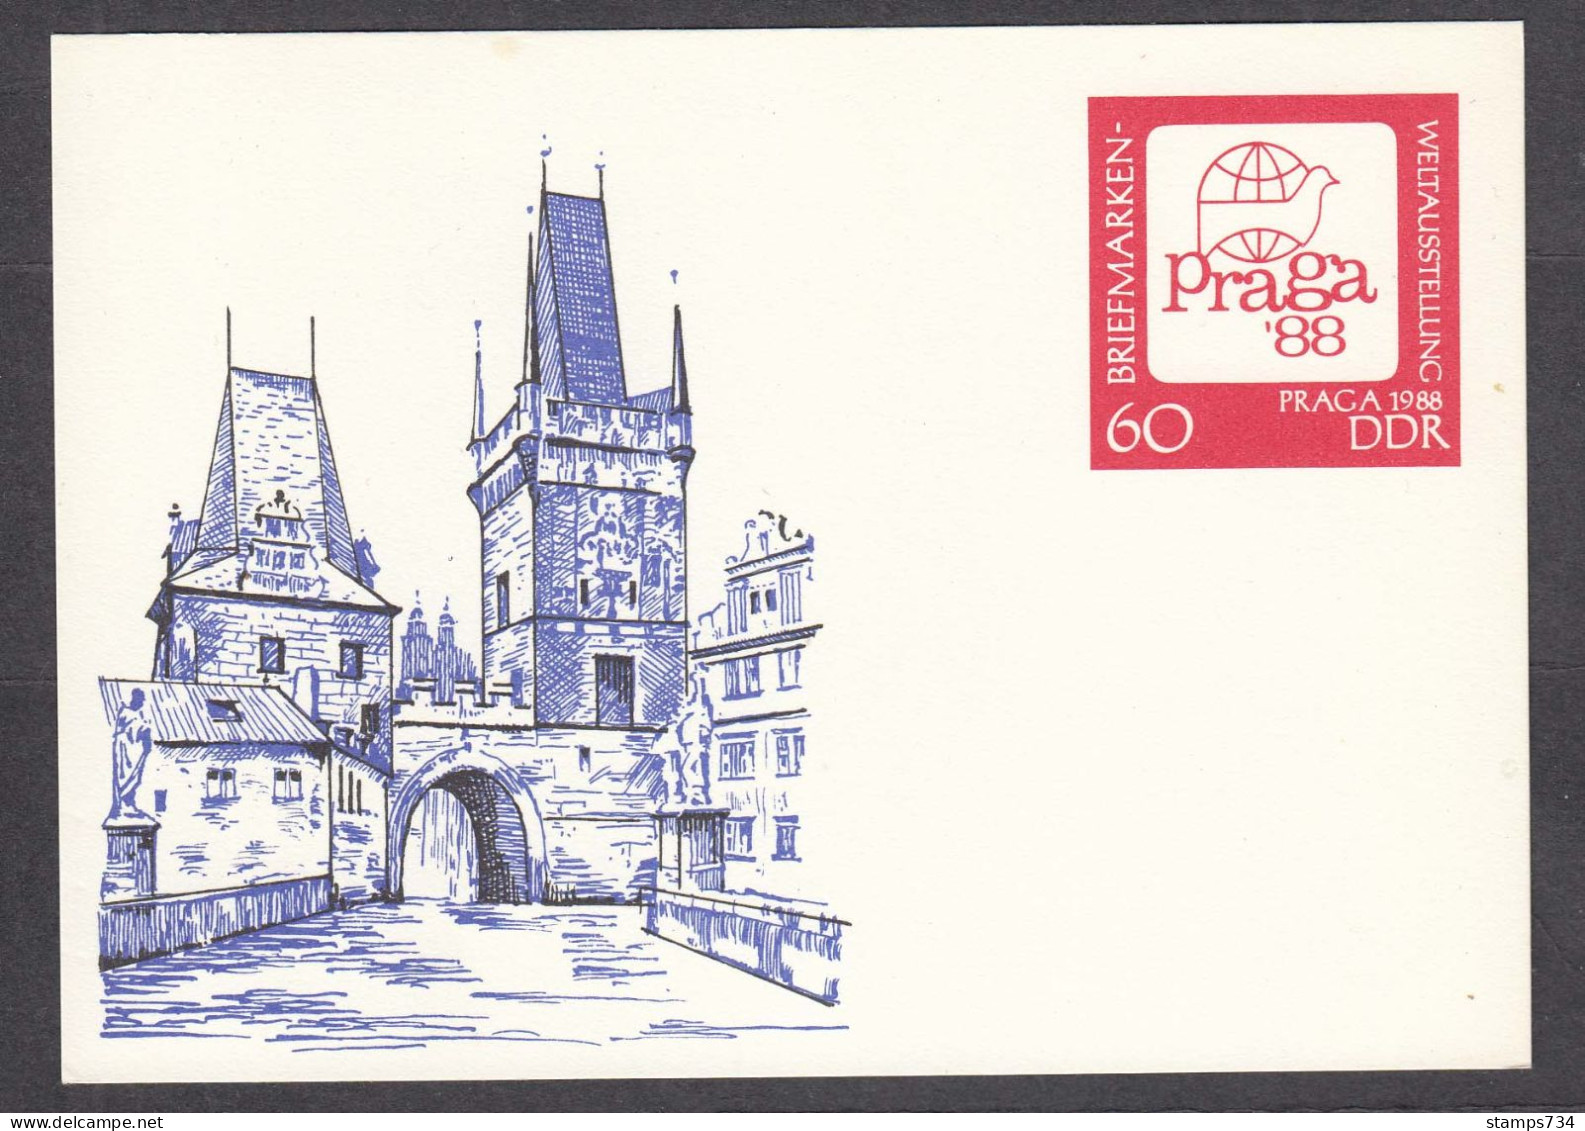 DDR 02/1988 - World Stamp Exhibion PRAGA'88, Post. Stationery (card), Mint - Postkarten - Ungebraucht